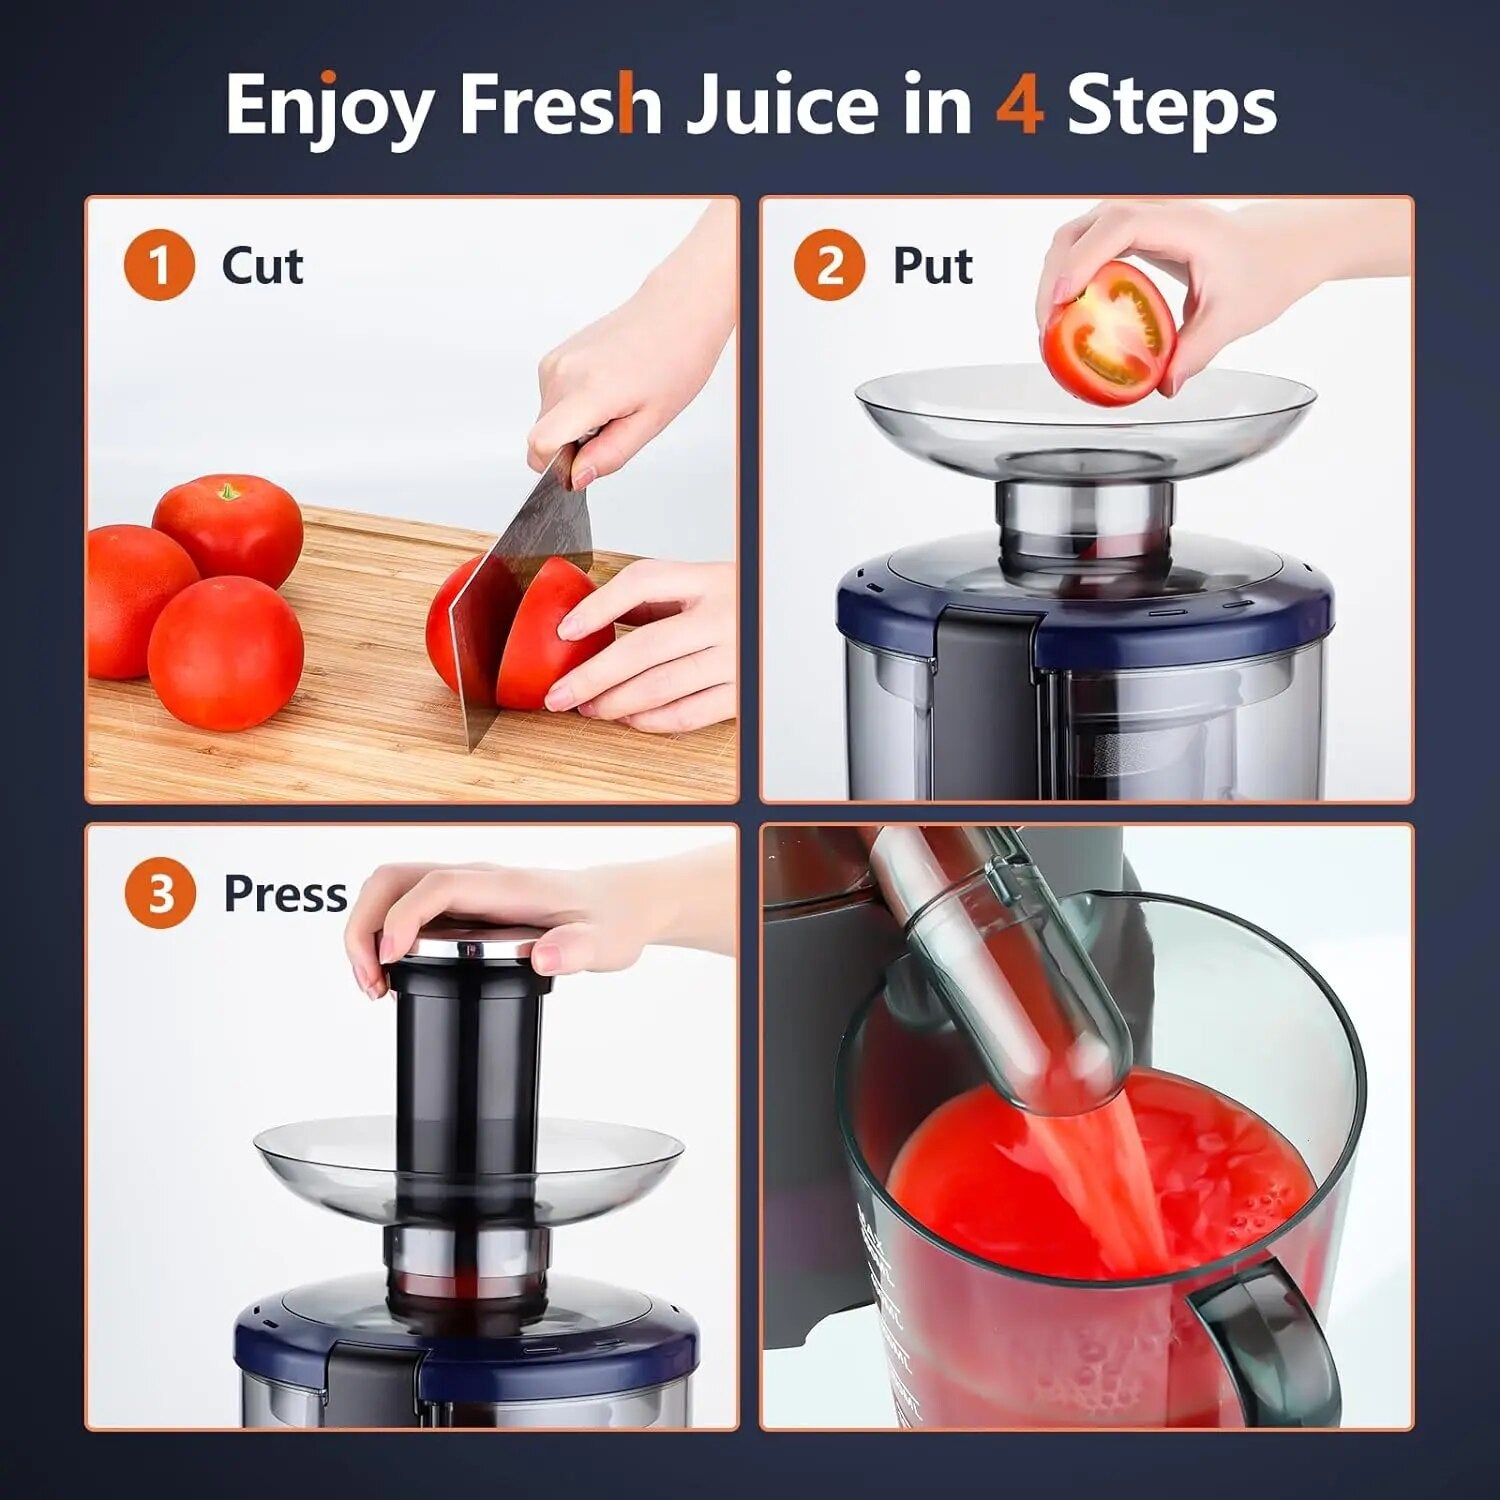 Sovider - Enjoy fresh juice in 4 steps